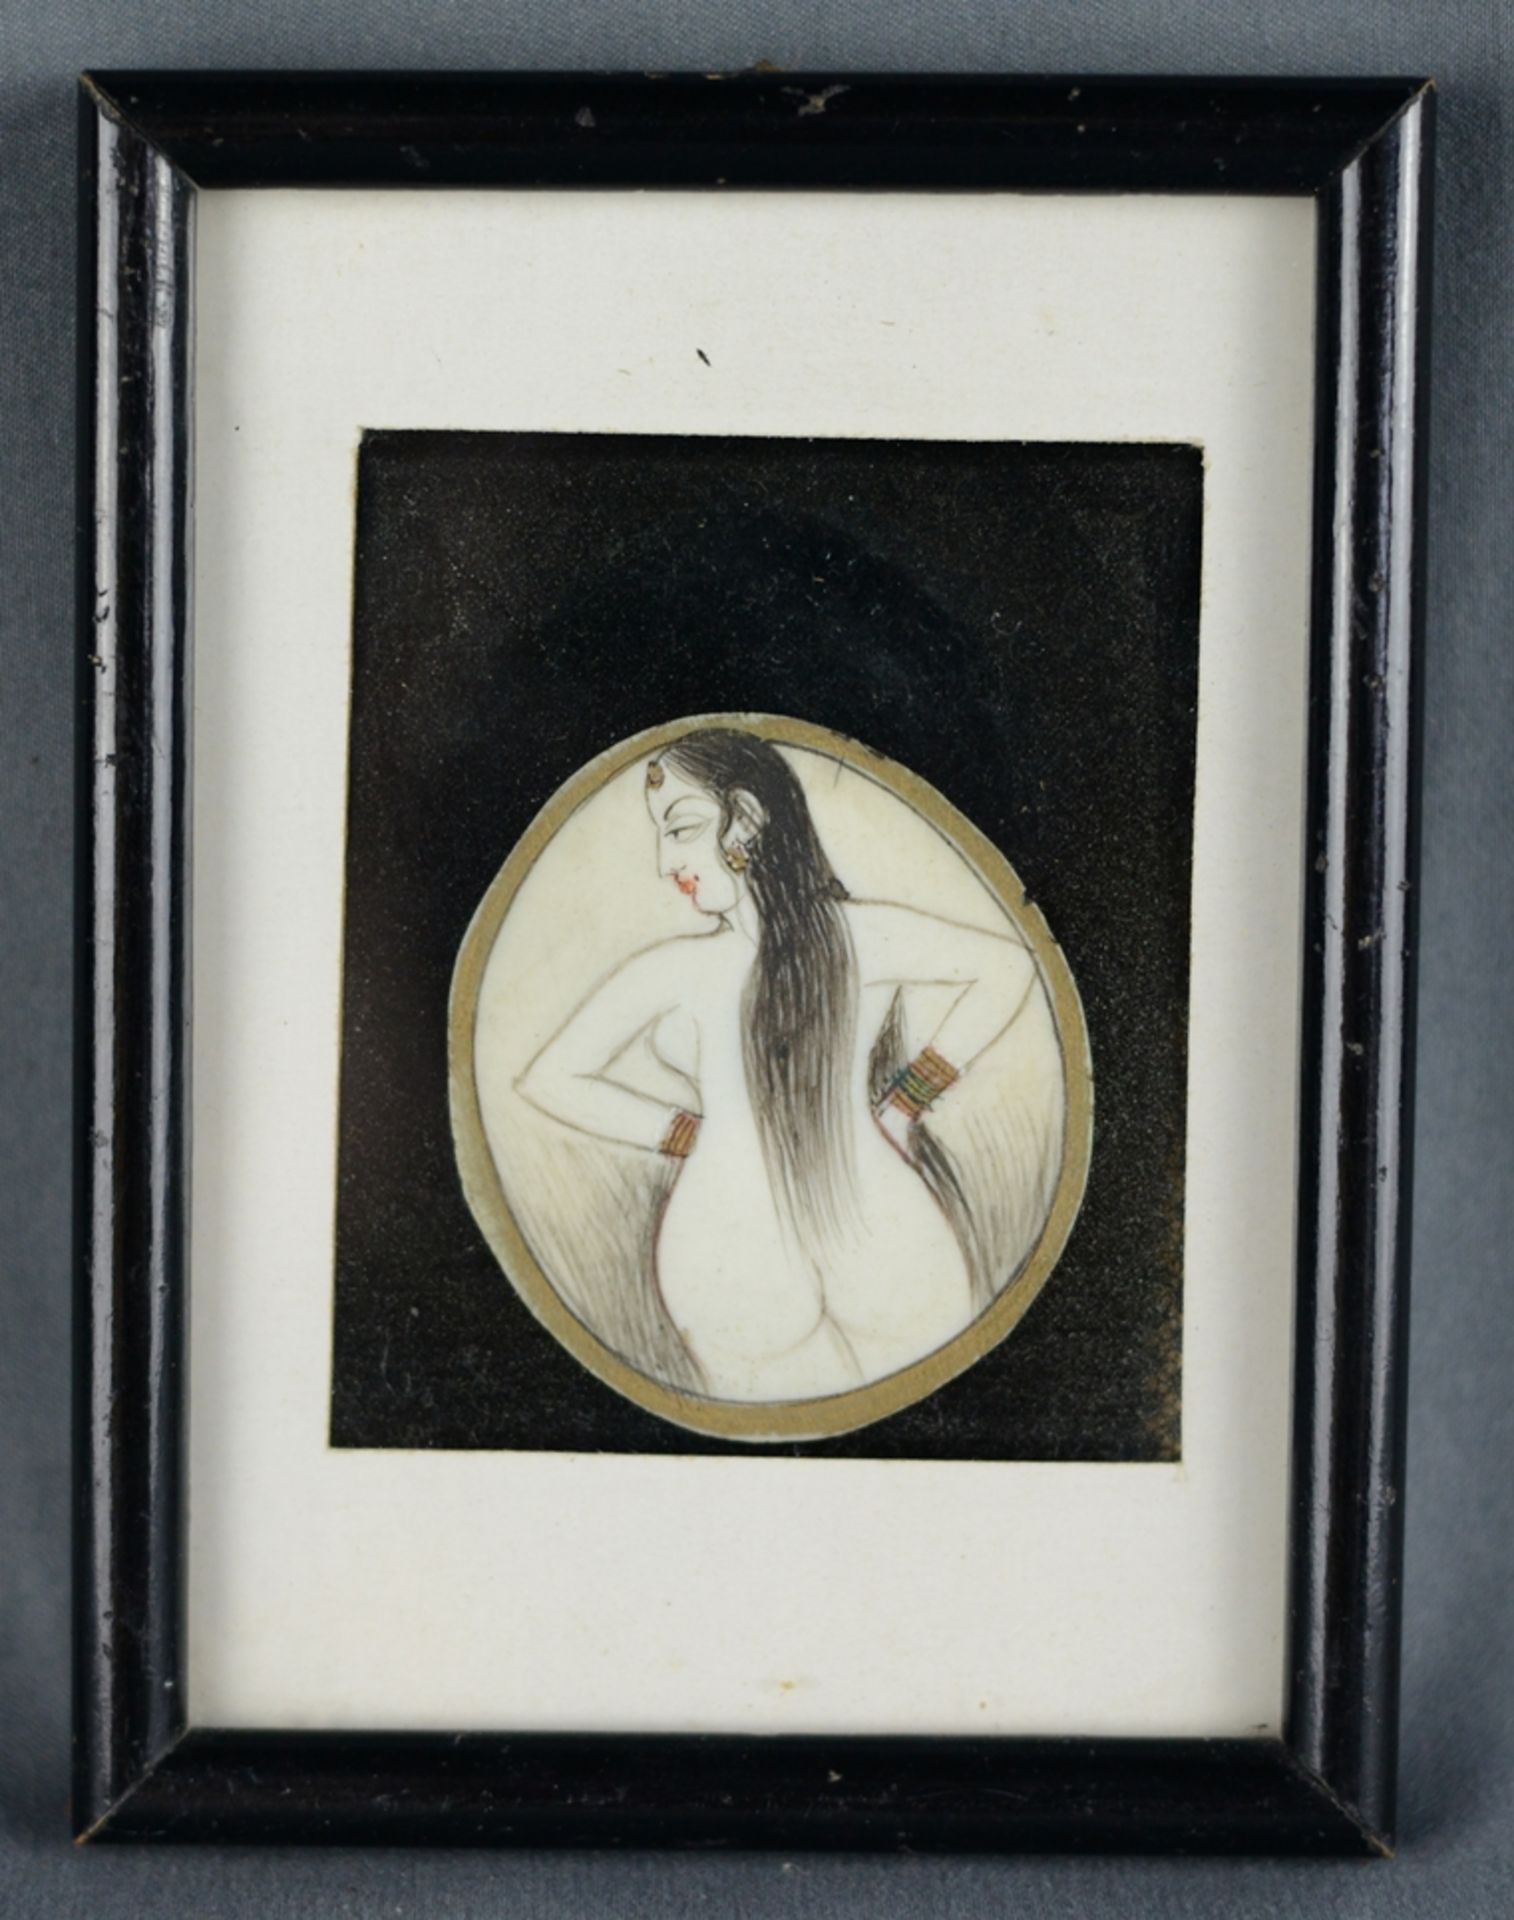 Miniatur, weiblicher Akt von hinten, oval, auf Bein mit Vergoldung, 4,8x4,4cm, hinter